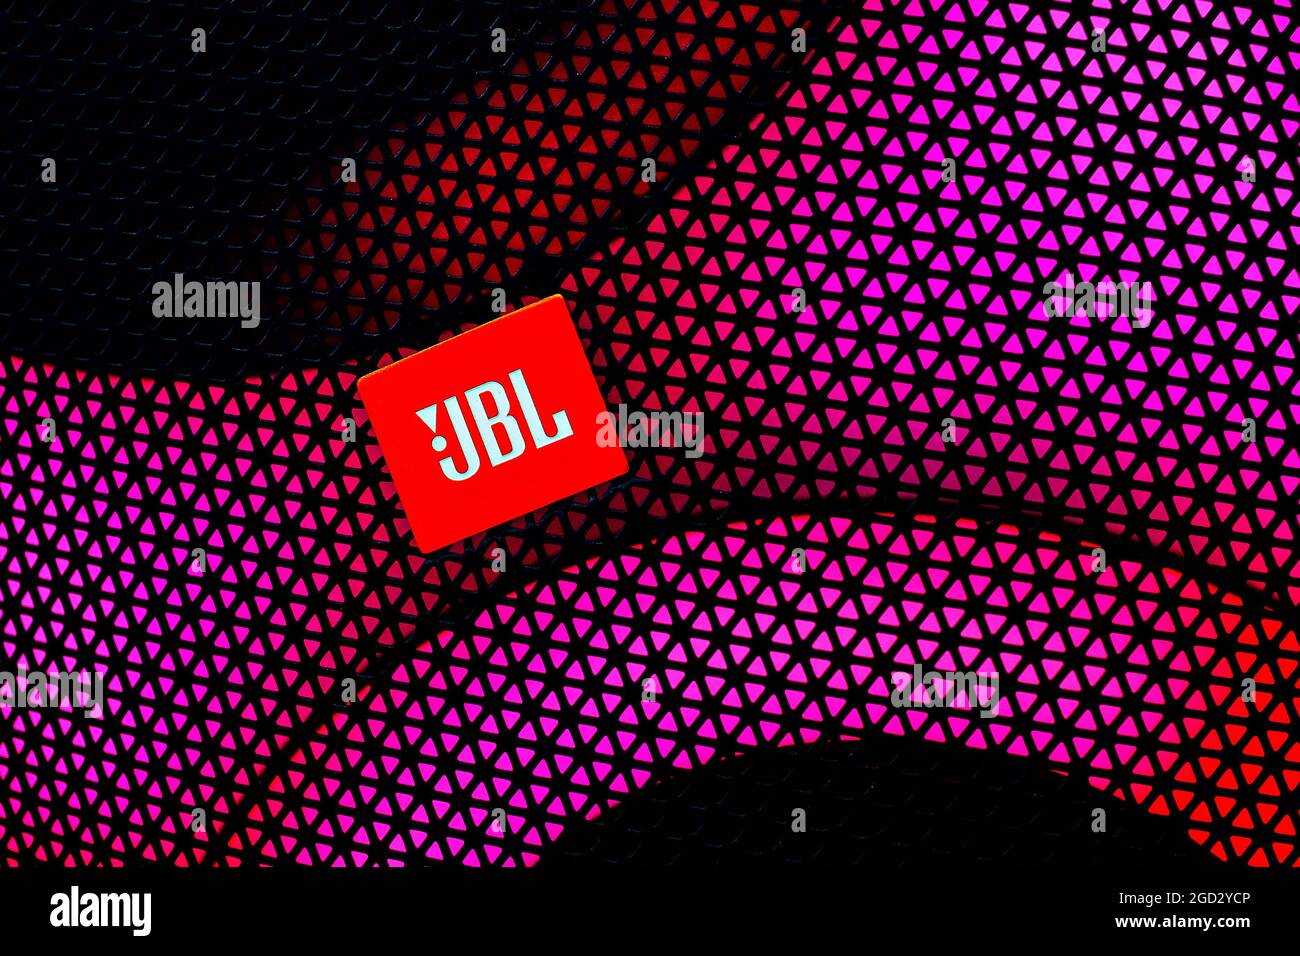 jbl logo wallpaper